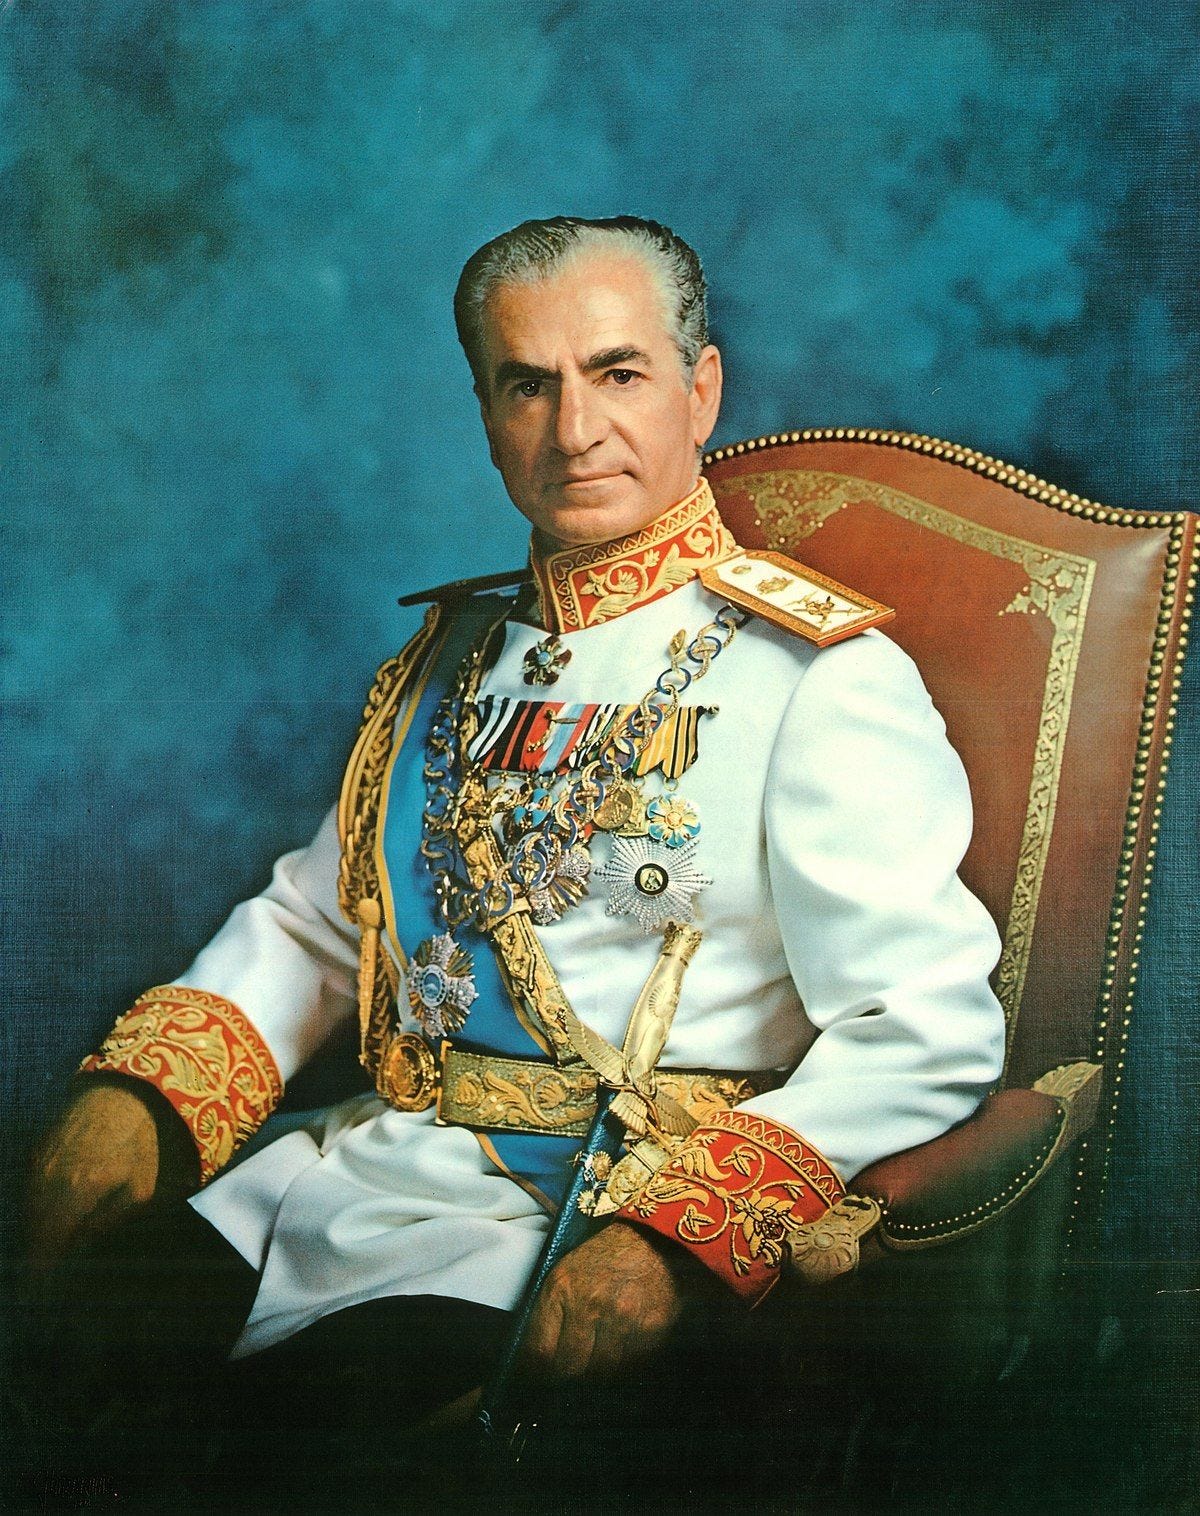 The last Shah of Iran, Mohammad Reza Pahlavi